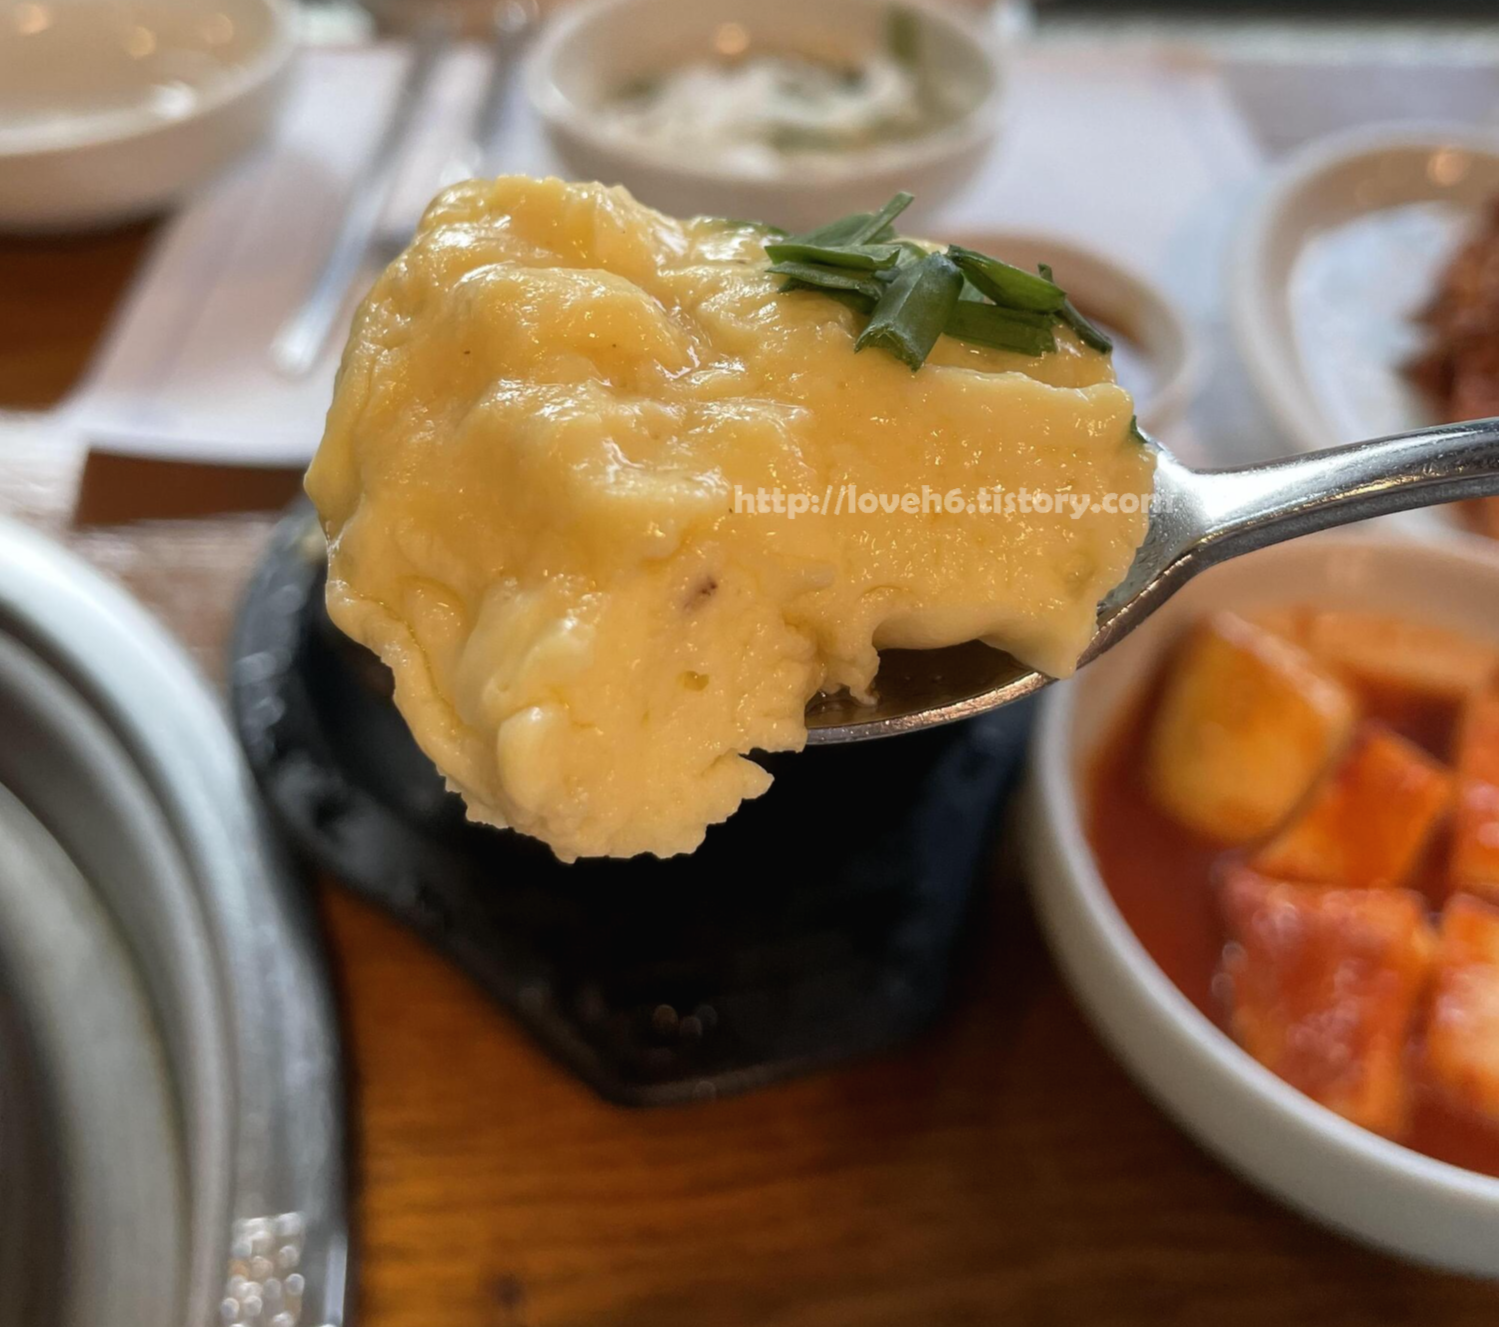 광양숯불구이 상무본점/Gwangyang Charcoal Grilled Sangmu Main Branch/달걀찜

식당에서 먹는 달걀찜은

왜 이리 부드럽고 입에서 

살살 녹으면서 맛이 좋을까요